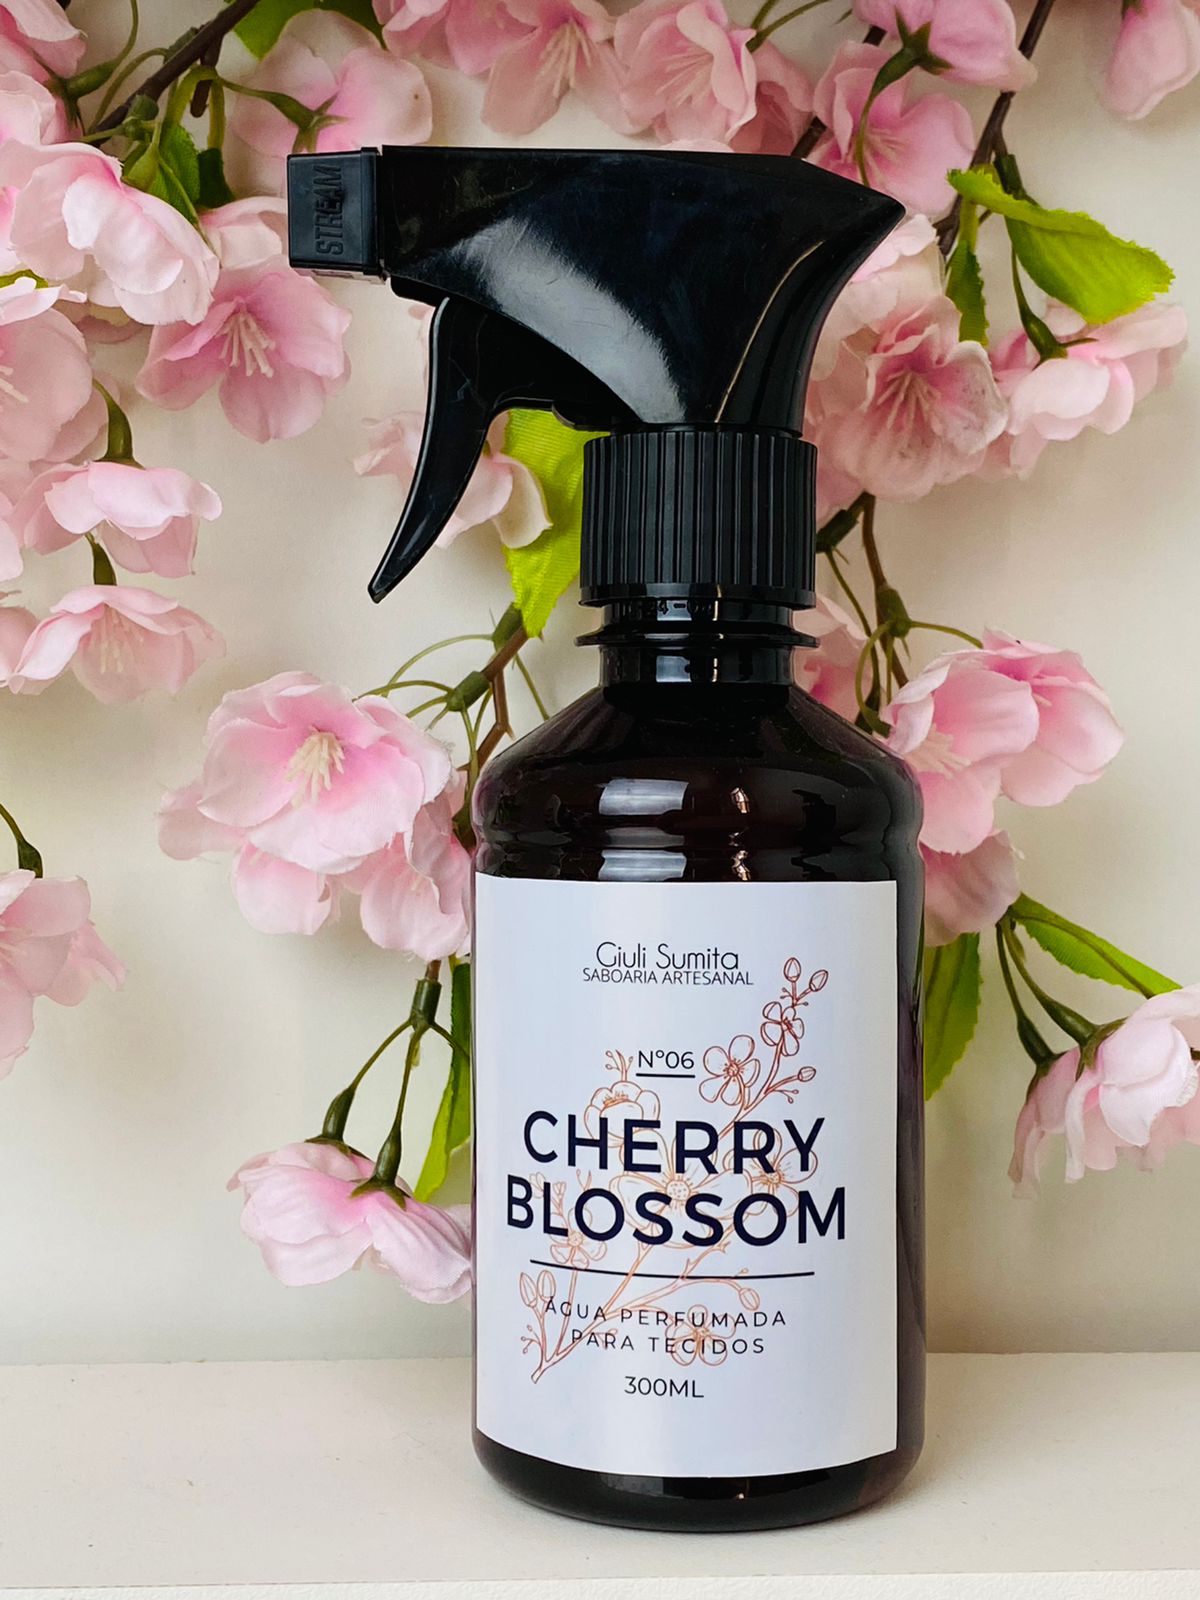 Cherry Blossom - Água Perfumada para tecidos e ambiente